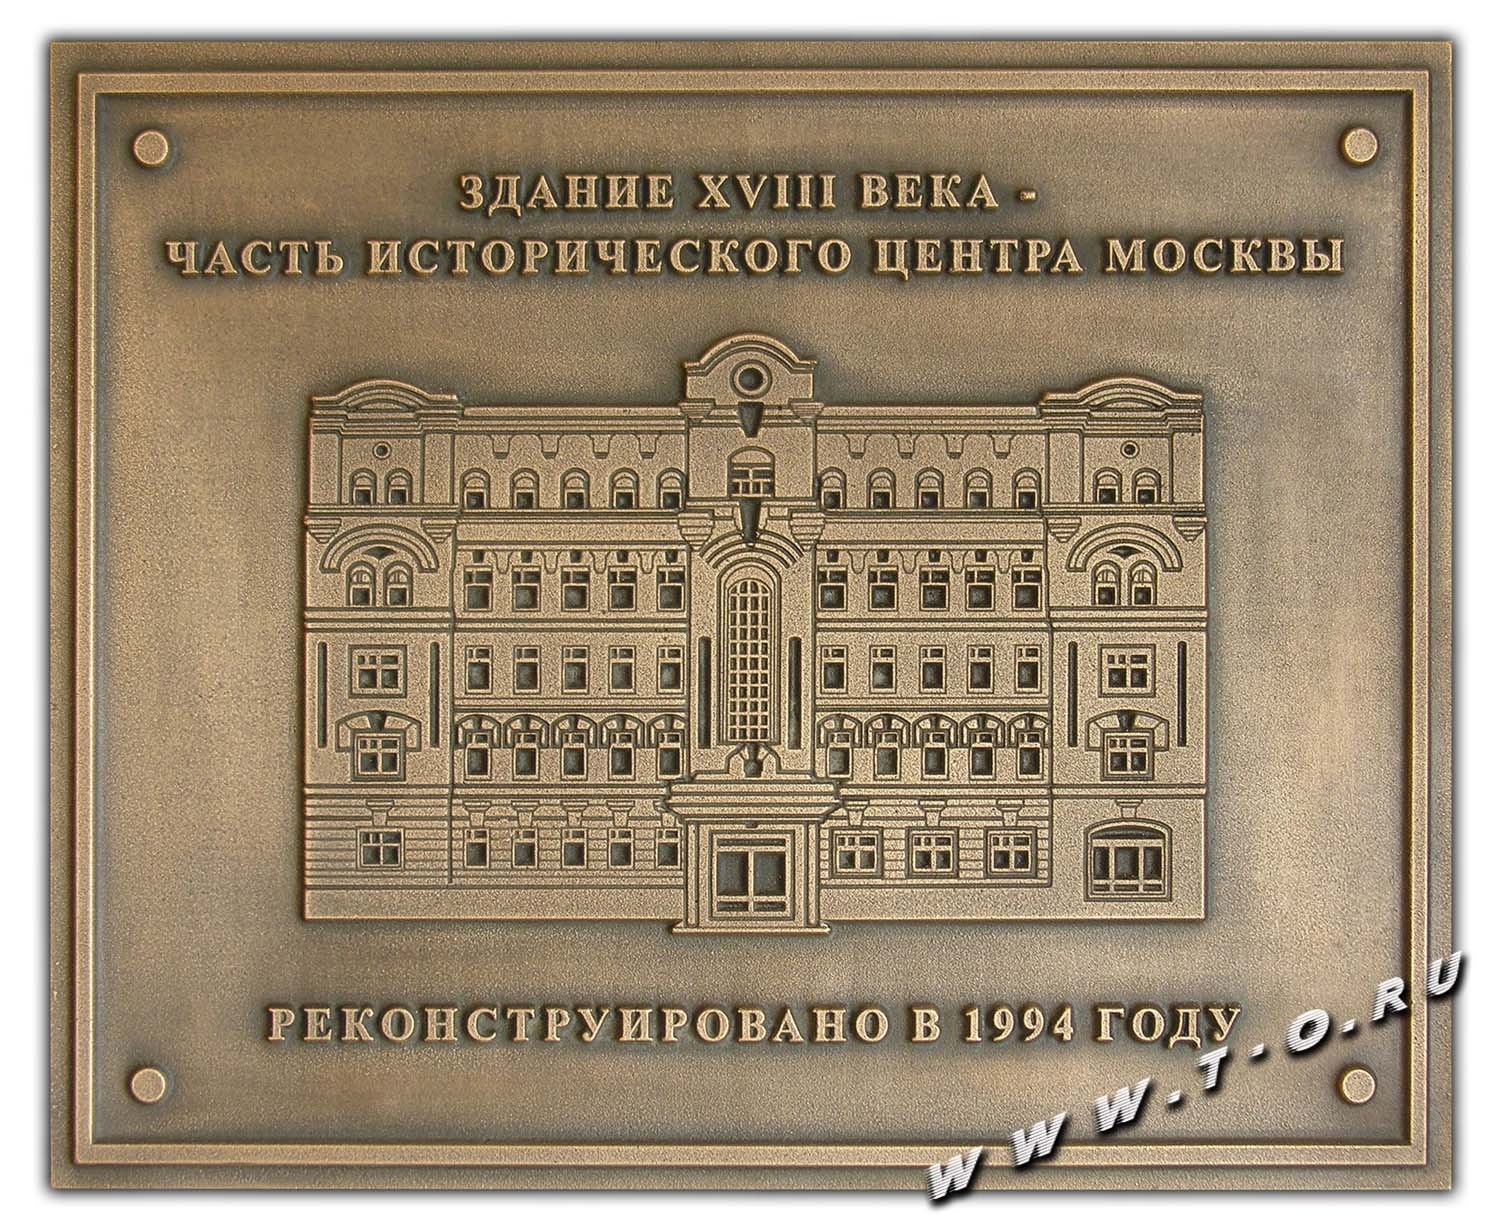 Мемориальная доска из бронзы с изображением исторического здания 18 века в центре Москвы. Барельеф и буквы - выпуклые. Мемориальная памятная доска изготовлена по технологии художественного литья с искусственным патинированием бронзы для фасада здания, изображение которого на ней изображено.